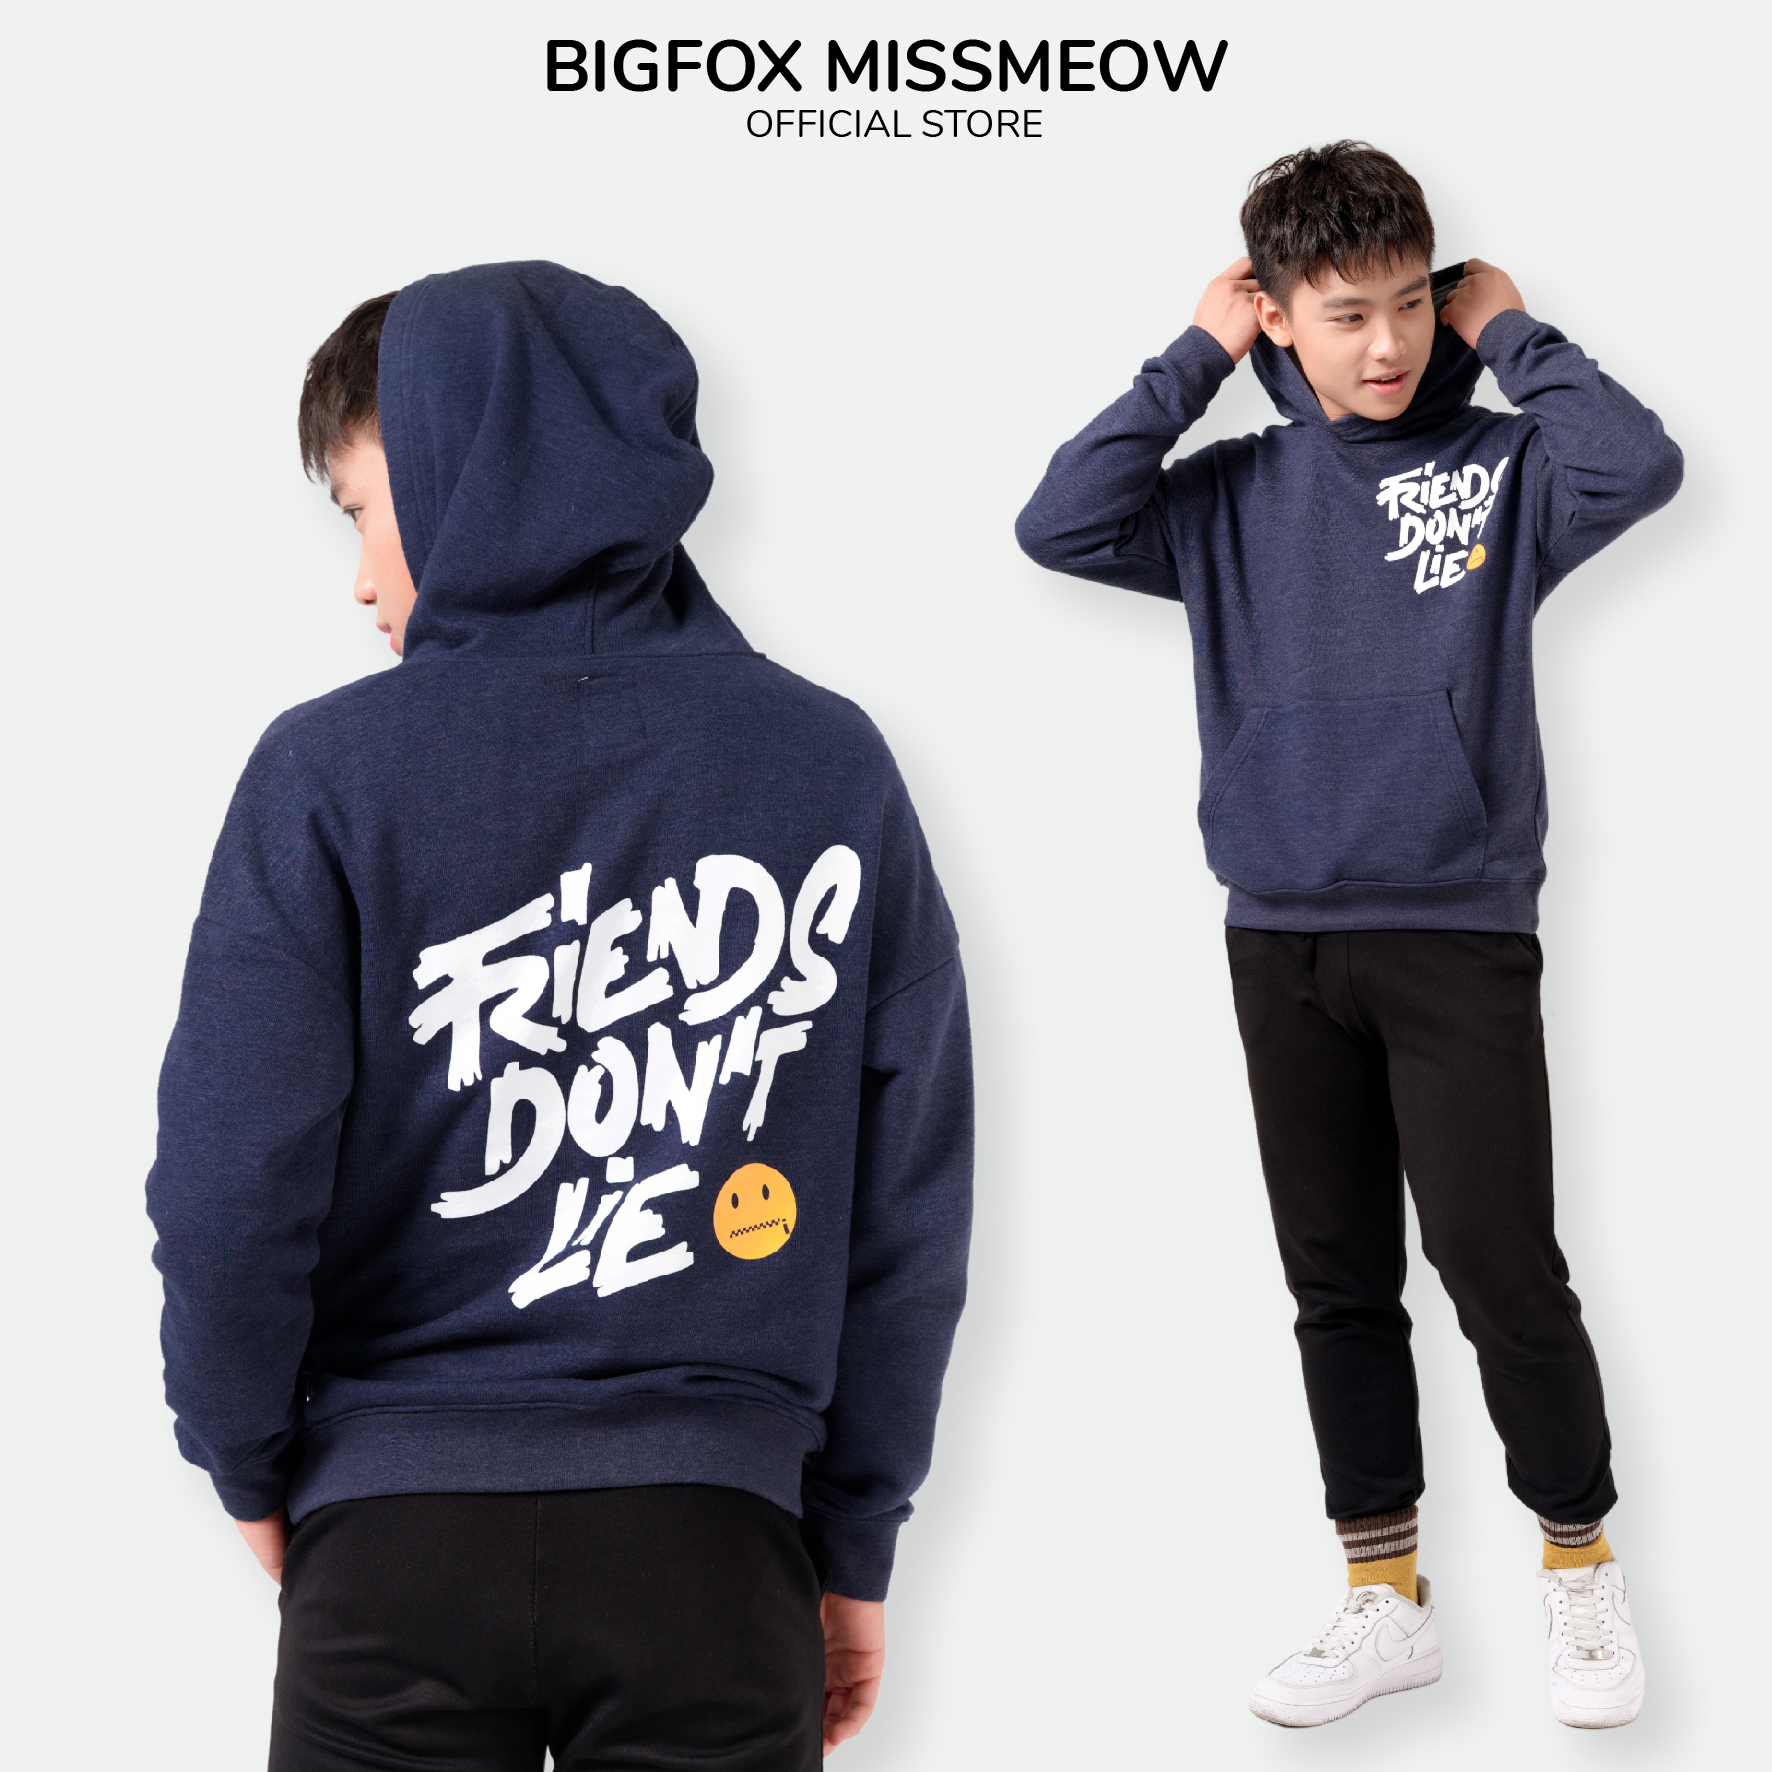 Áo bé trai BIGFOX - MISS MEOW thu đông, áo nỉ cho bé dài tay có mũ hoodie size đại friend dont lie 12-15 tuổi